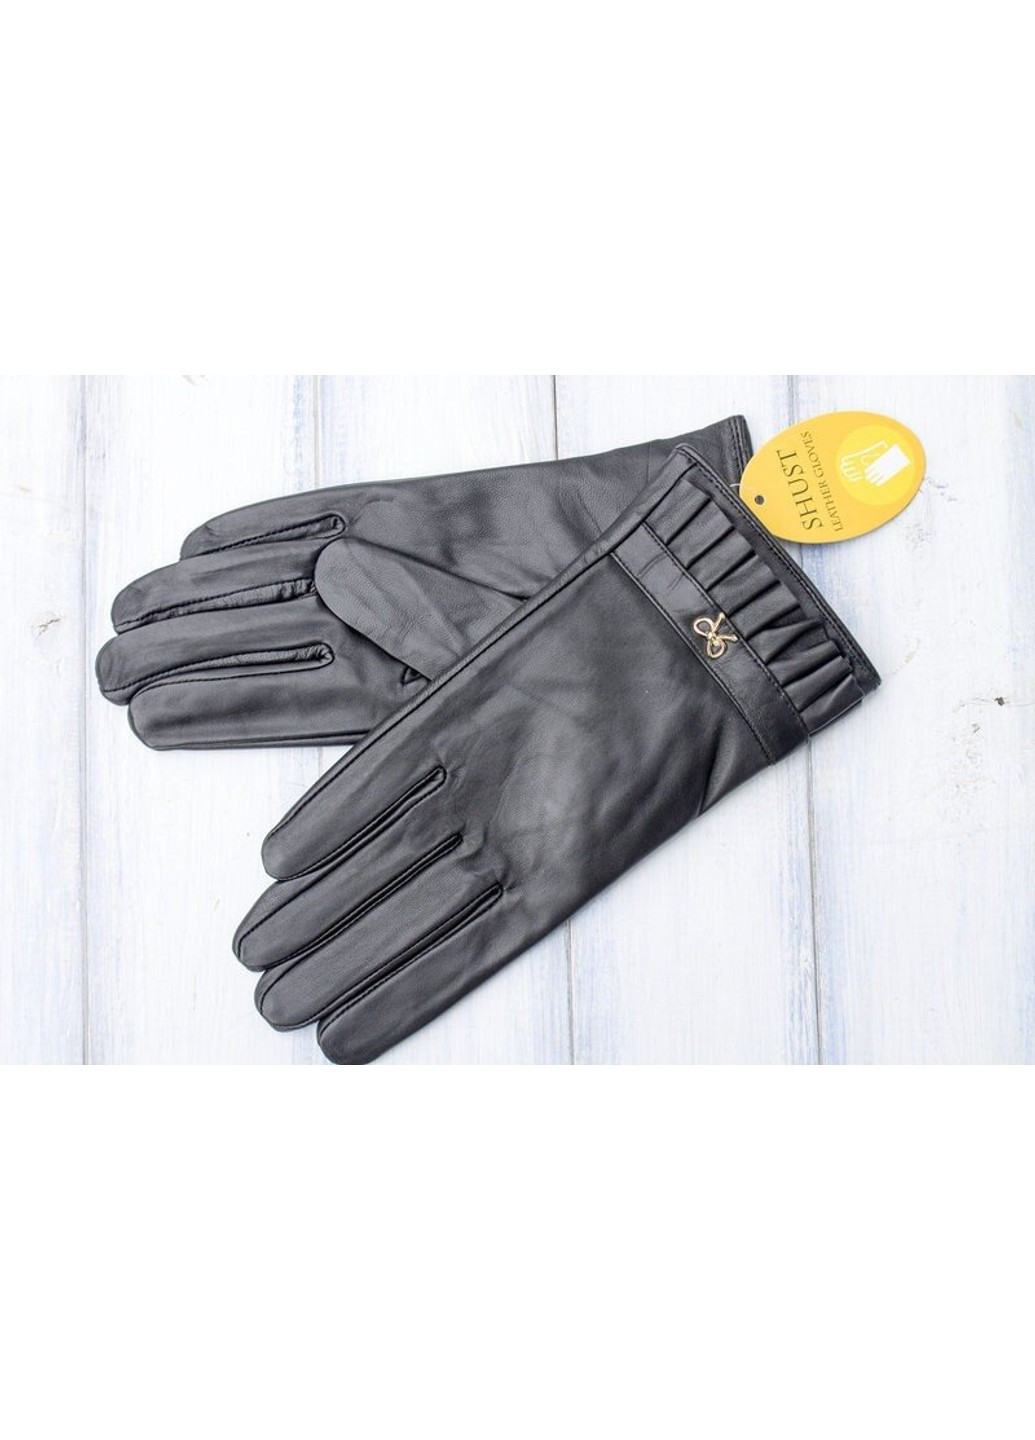 Черные женские перчатки из натуральной кожи М Shust Gloves (266143014)